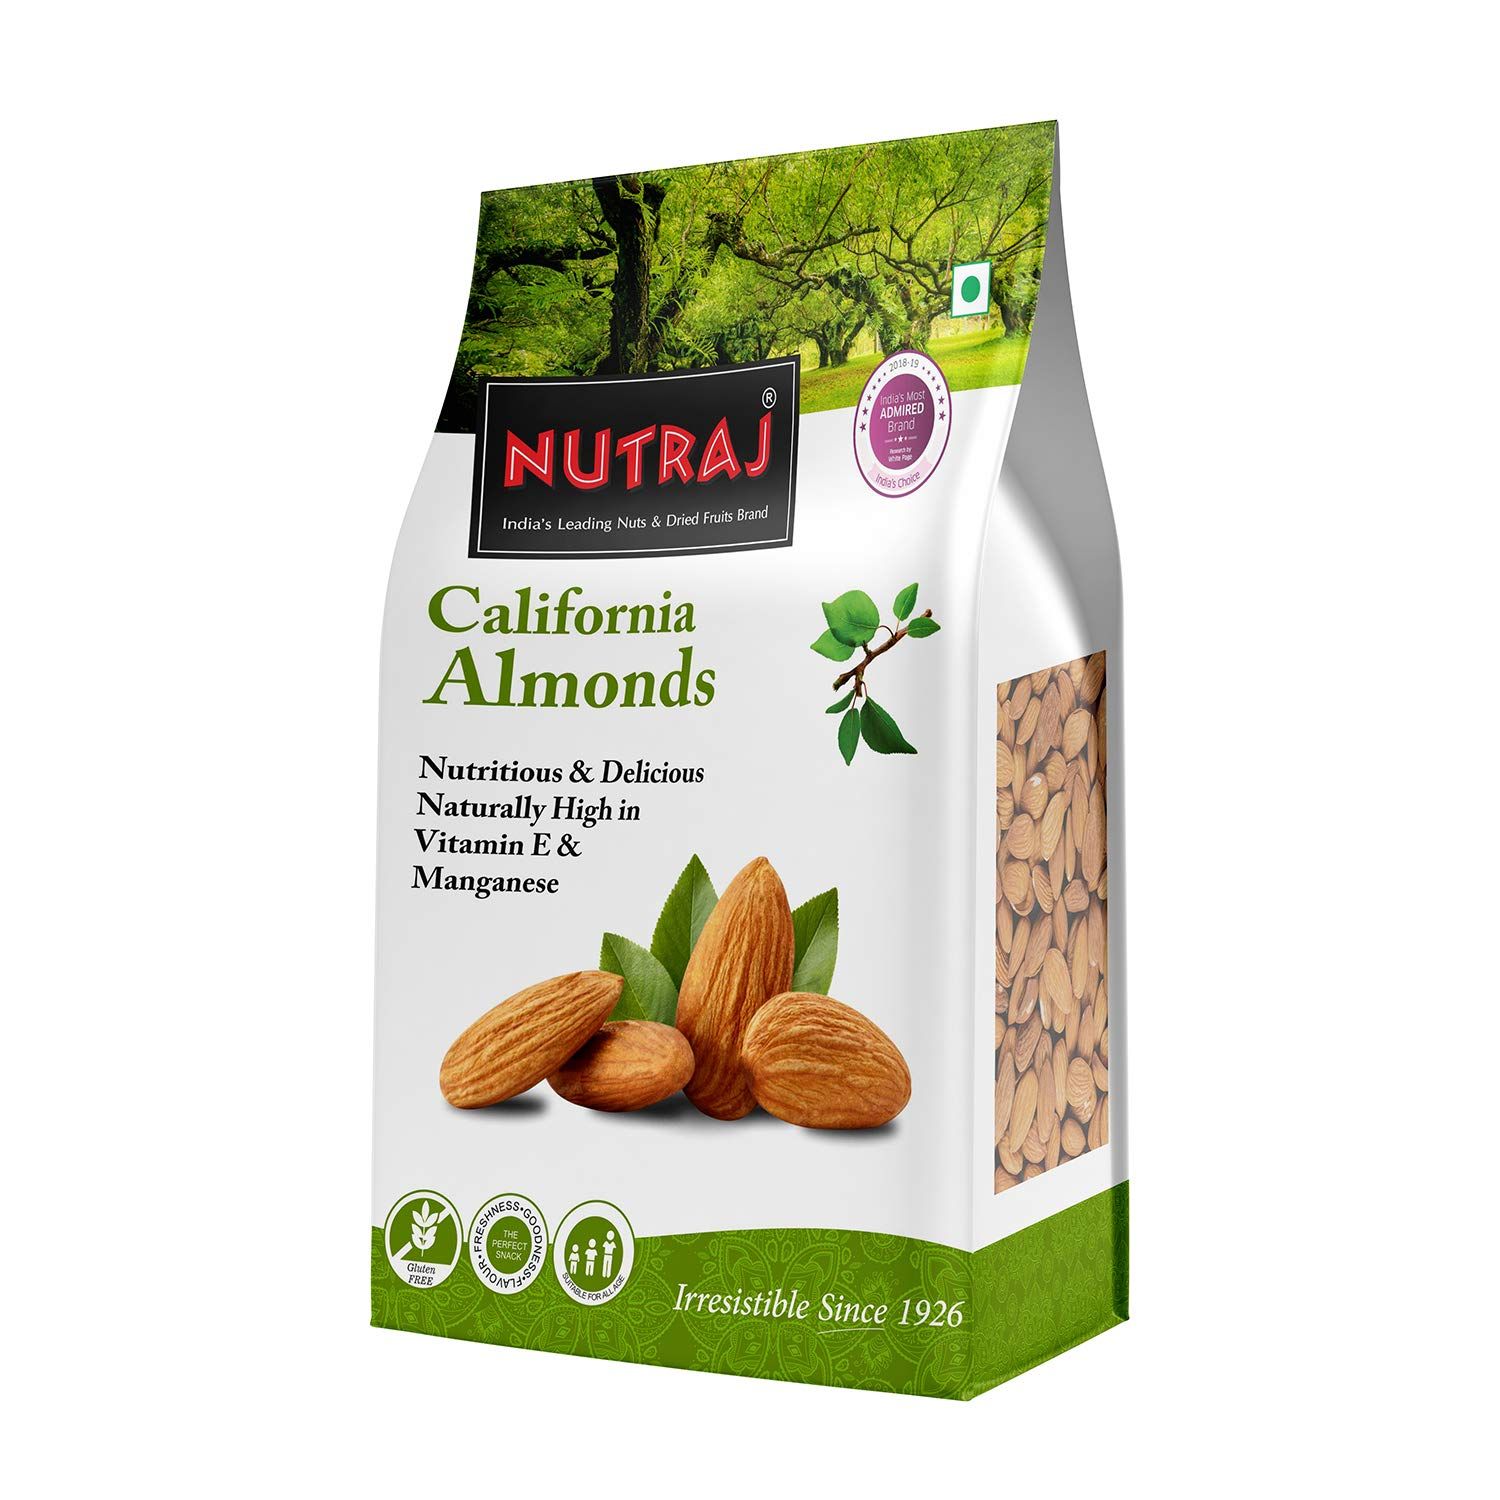 Nutraj California Almonds Image